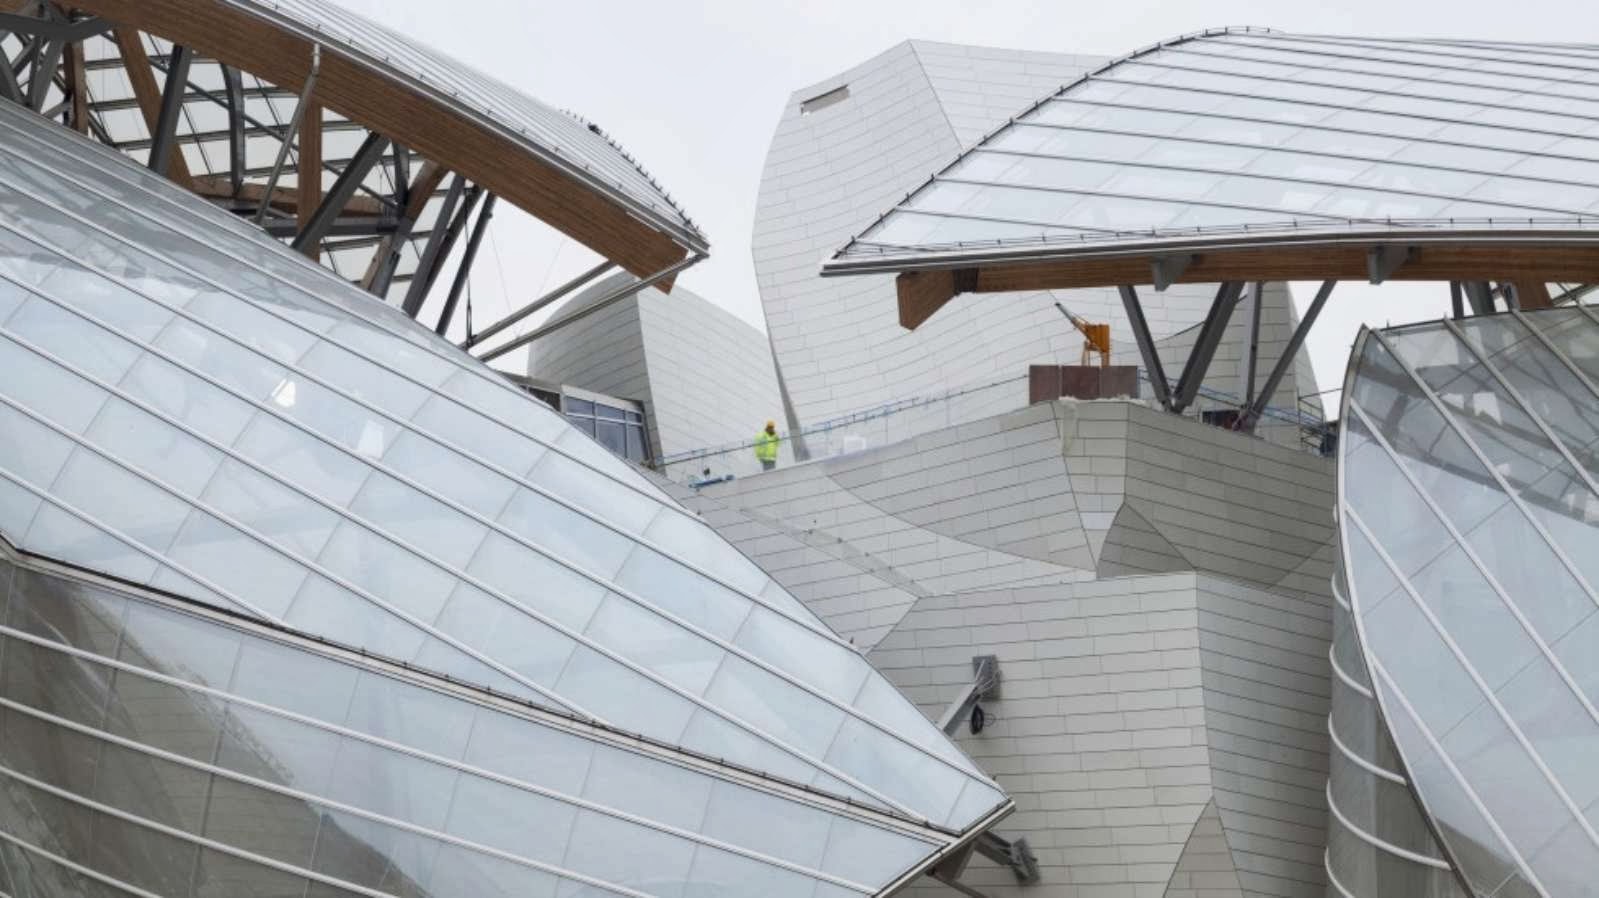 Fondation-Louis-Vuitton-pour-la-creation-by-Frank-Gehry-05 –